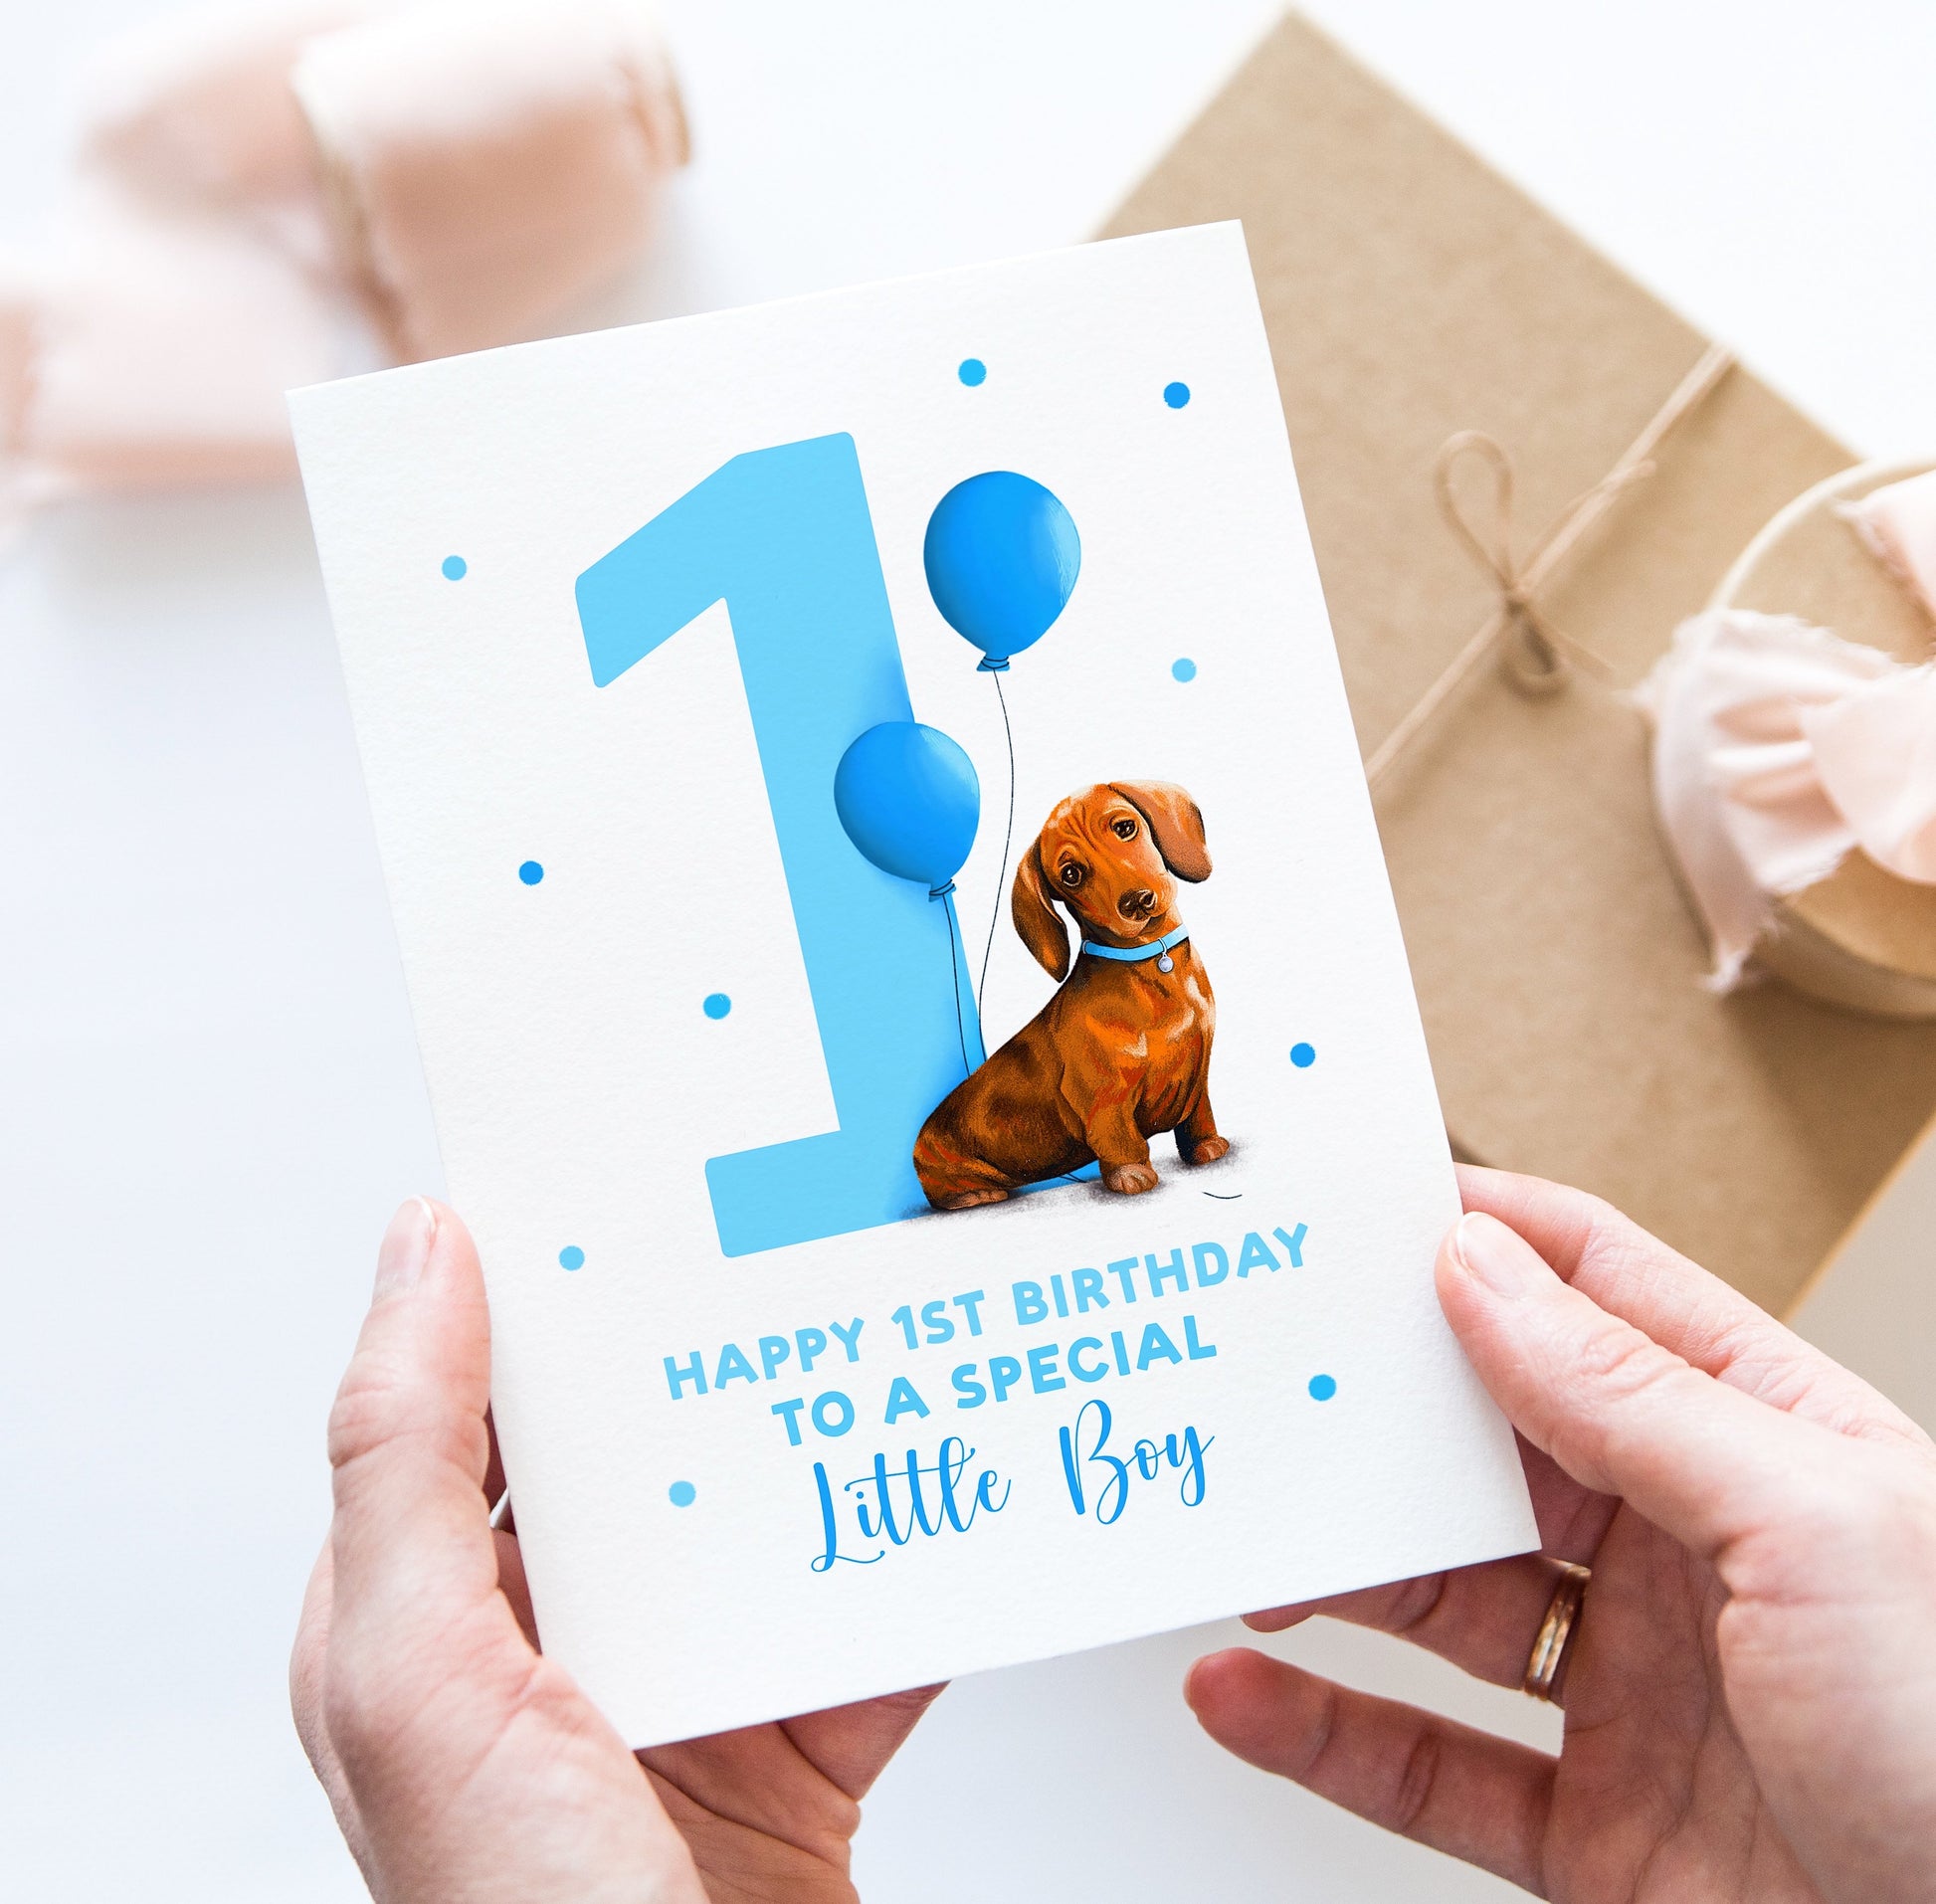 Happy 1st Birthday little boy dachshund card - Dear Cooper